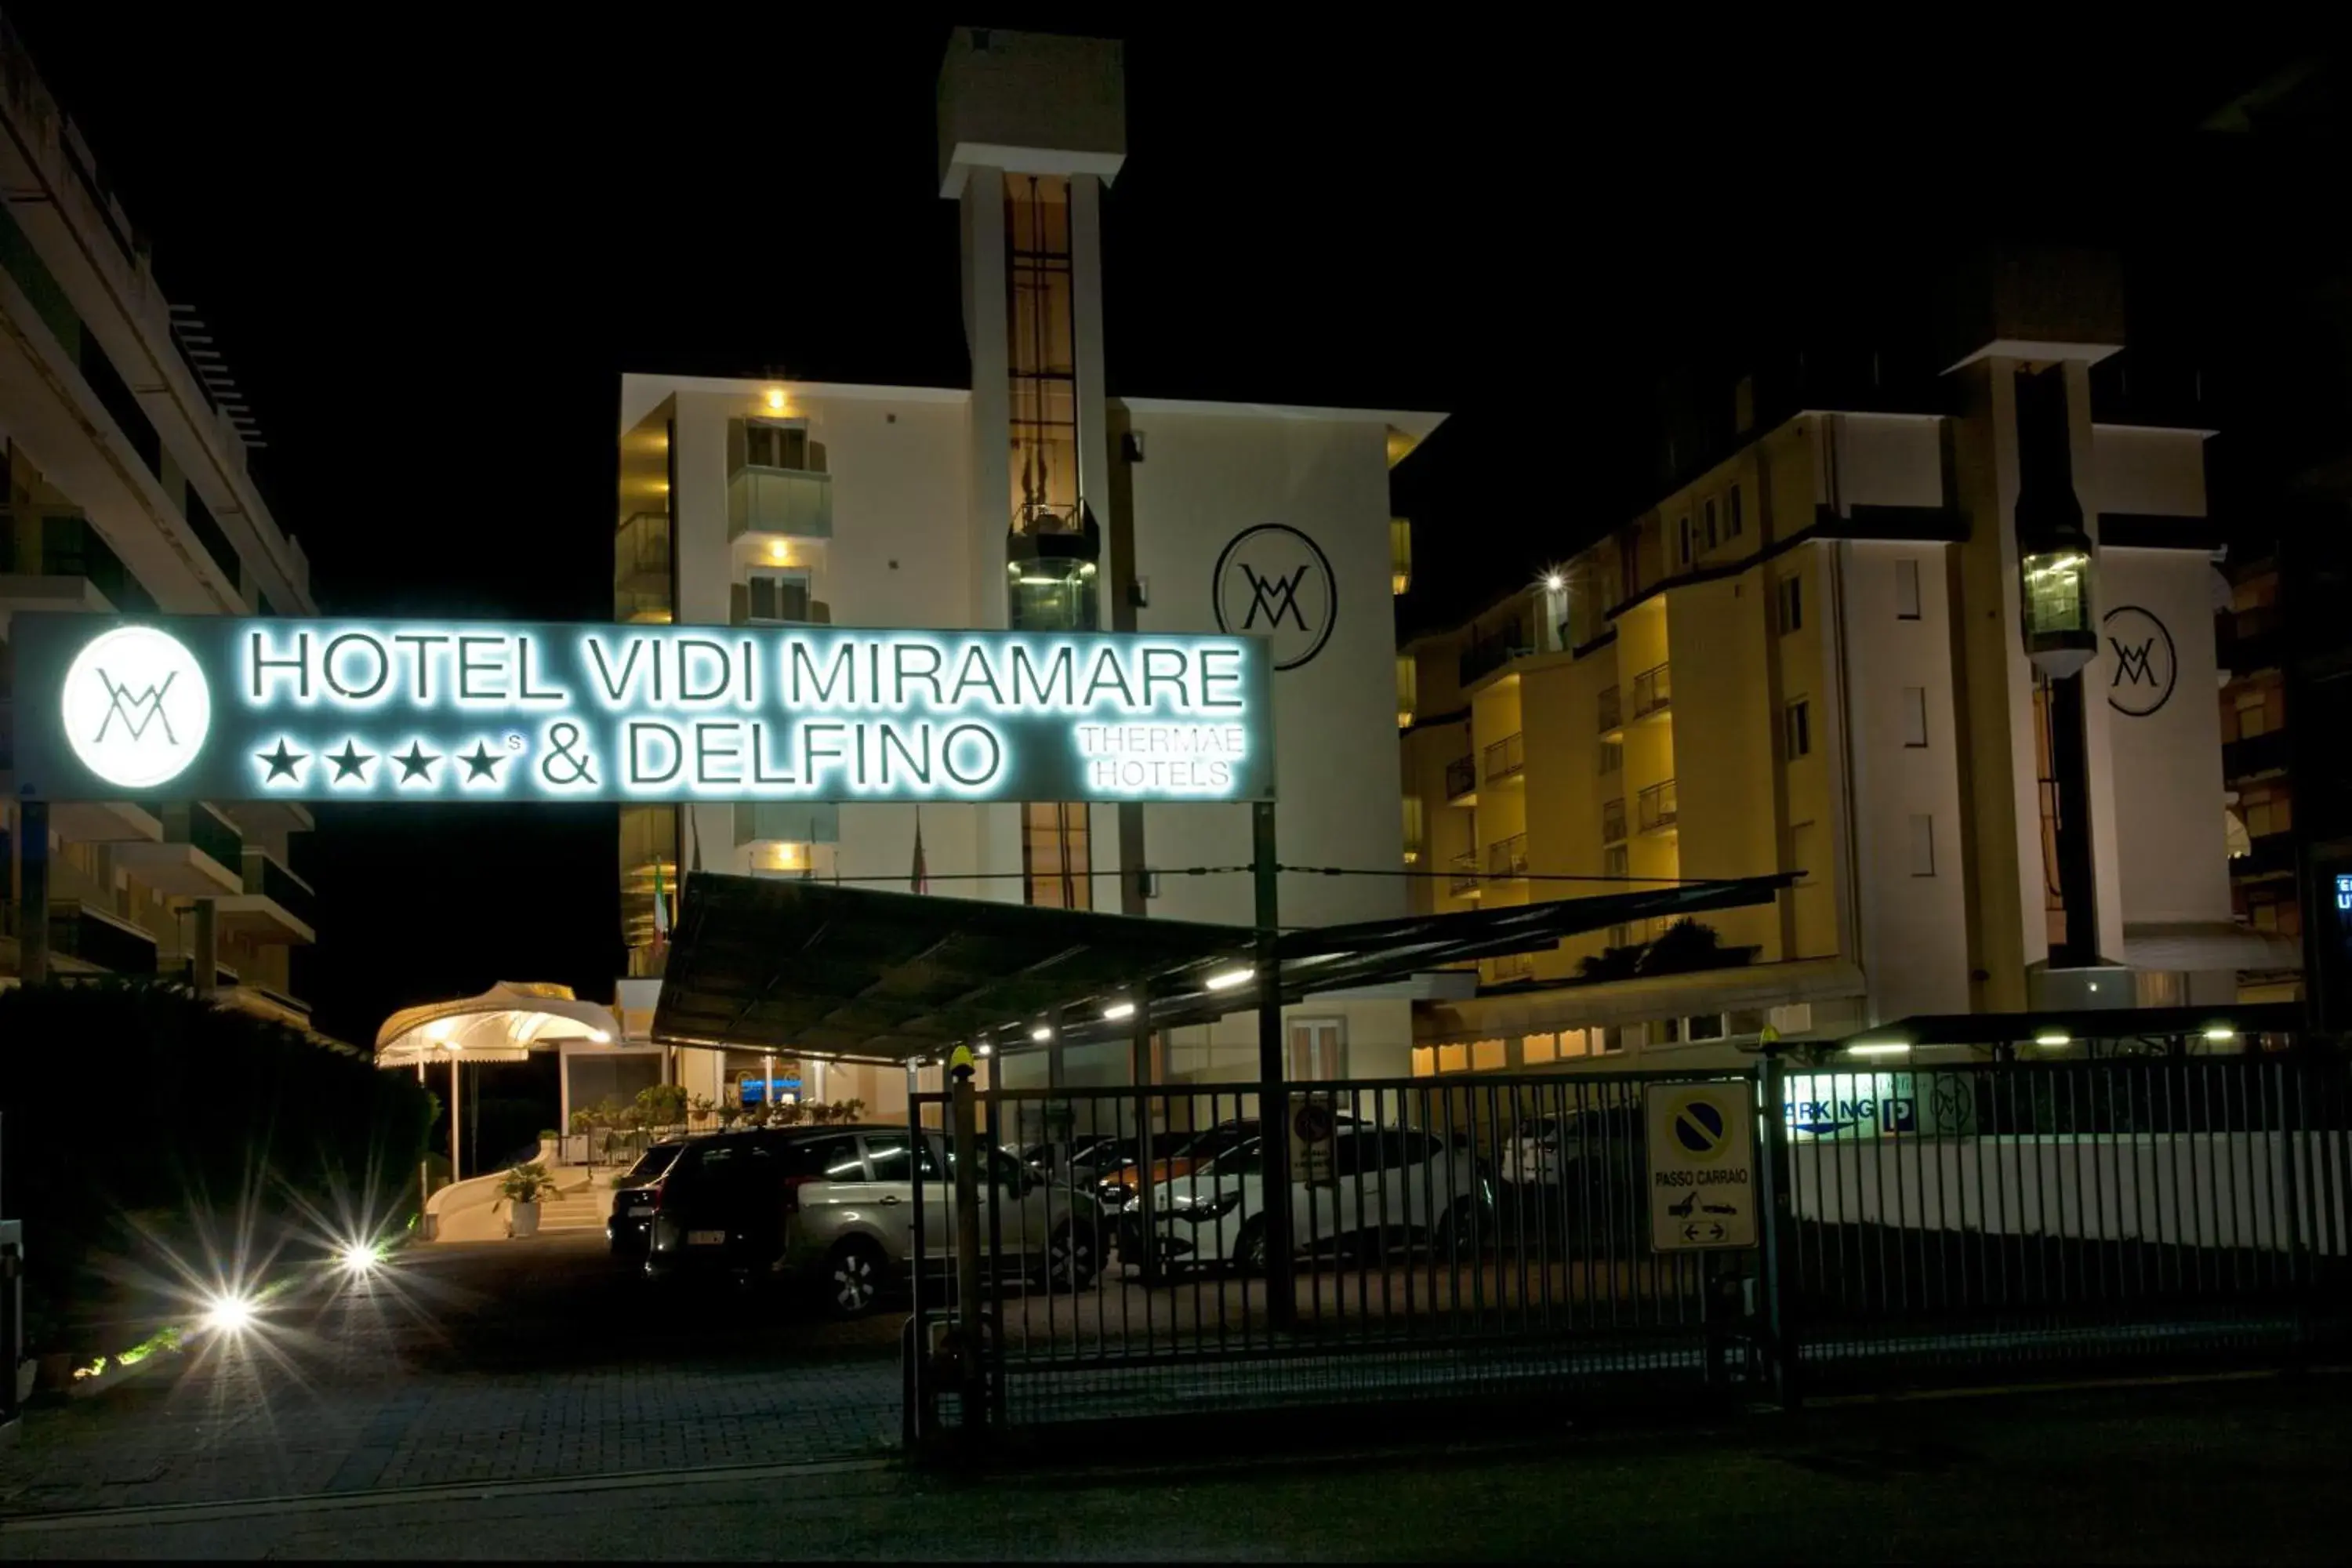 Property Building in Hotels Vidi Miramare & Delfino